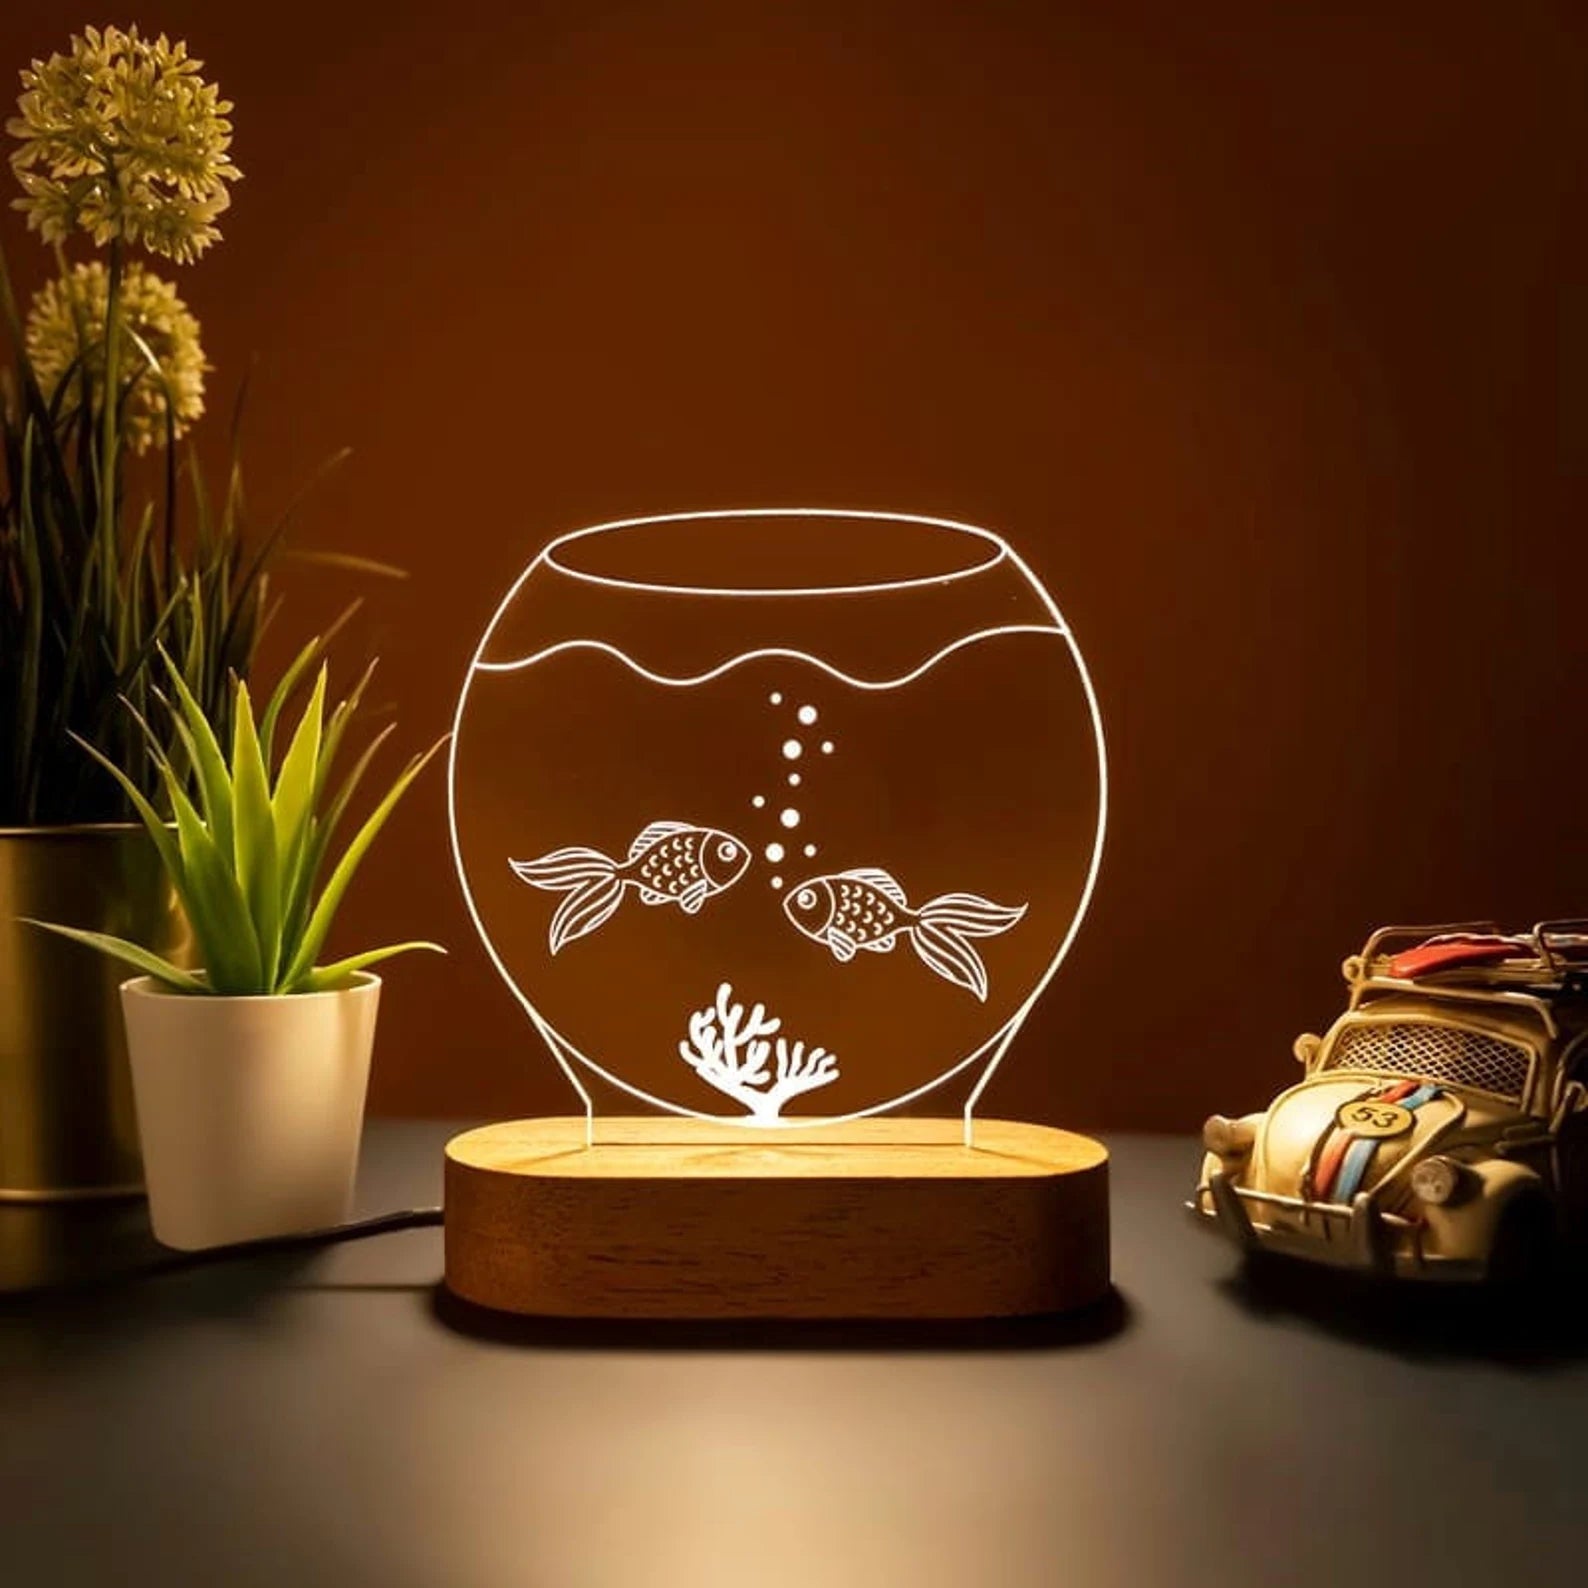 Personalized Fish Bowl Acrylic LED Lamp